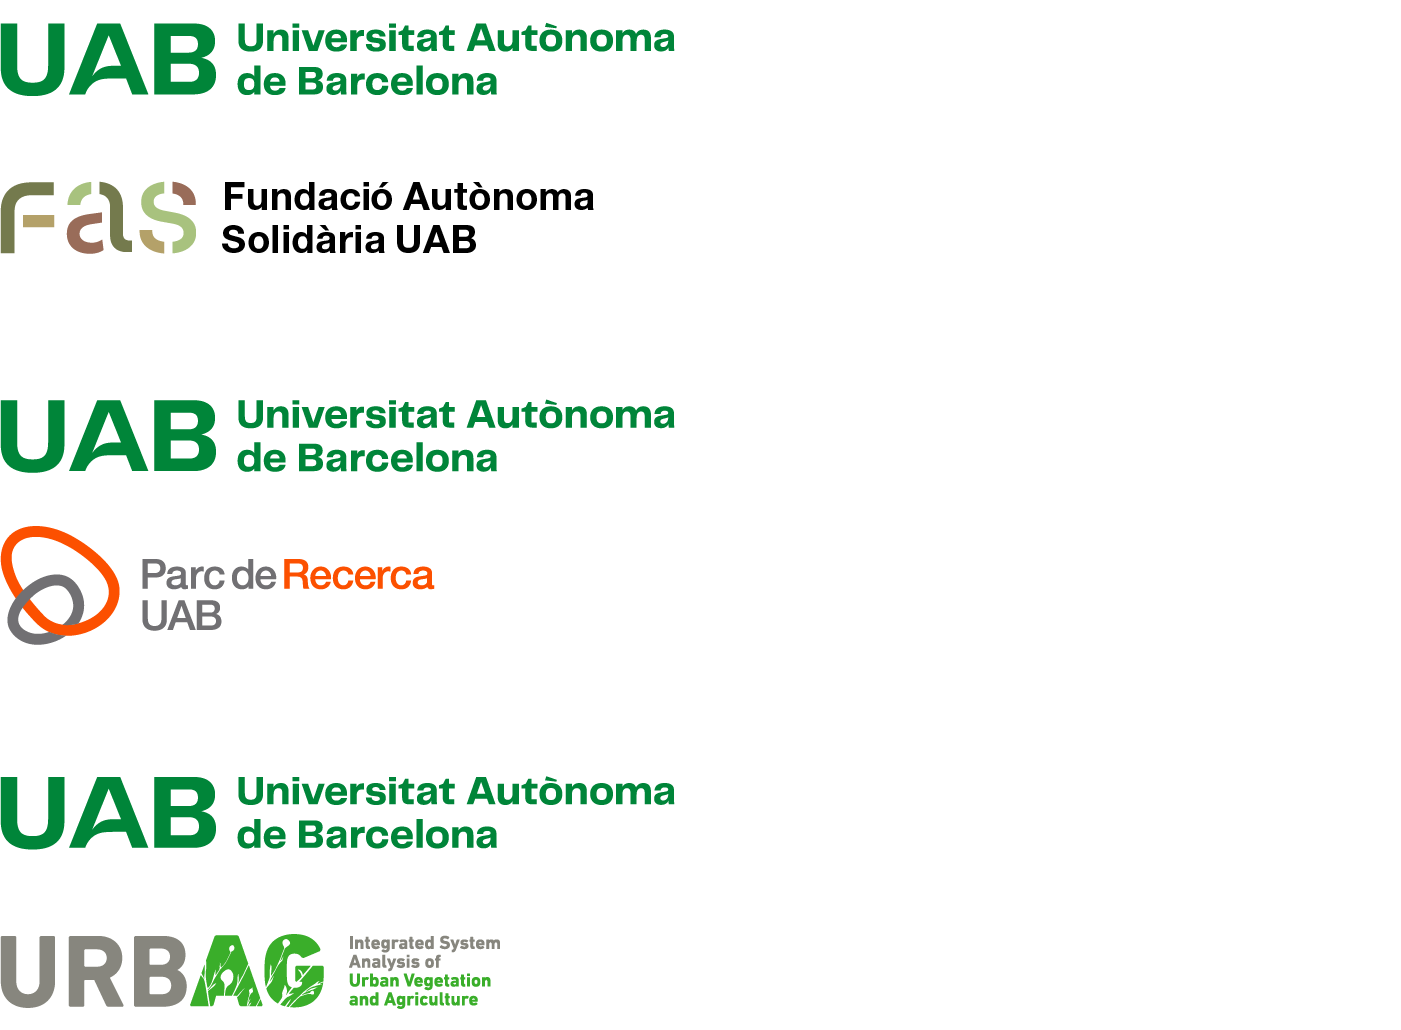 Exemples harmonitzacio de la composició vertical amb versió 3 del logotip UAB